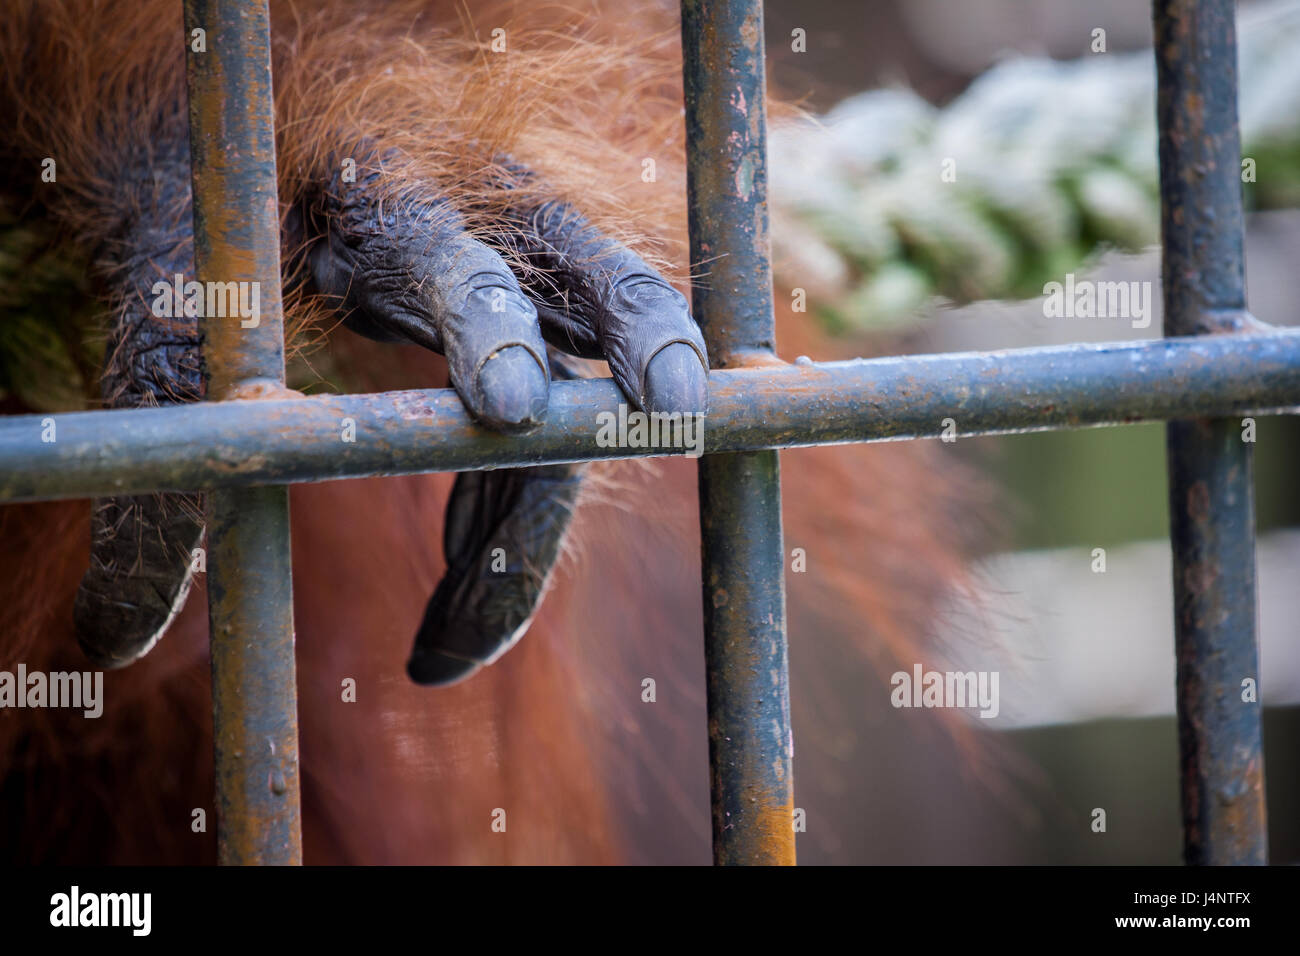 Orang-Utan-Hand berühren Käfig Eisenstangen in seinem gefesselt Zustand. Orang-Utans sind eine vom Aussterben bedrohte Spezies und brauchen oft Wildtiere Zentren zu pflegen Stockfoto